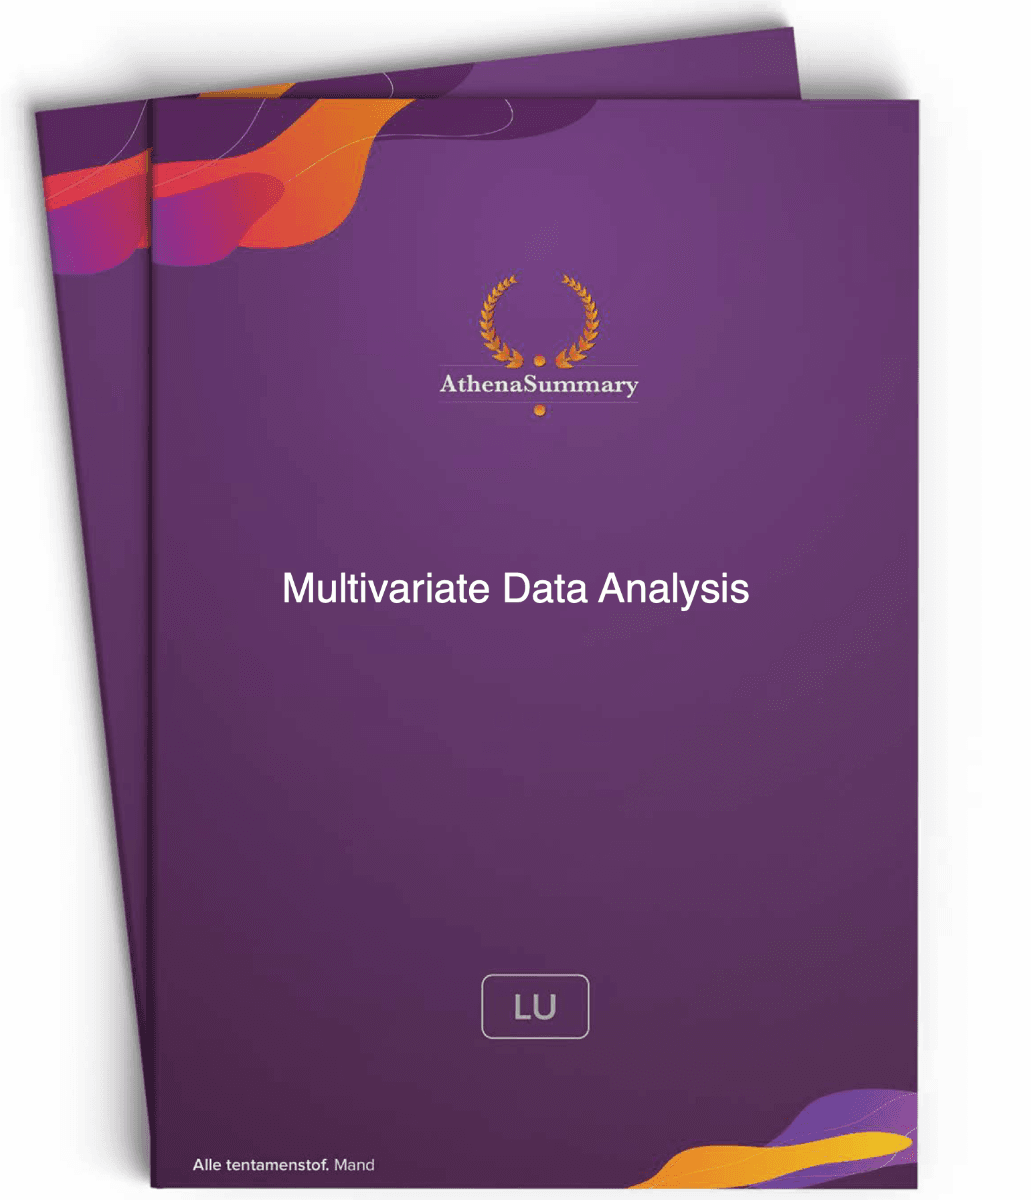 Literature Summary - Multivariate Data Analysis